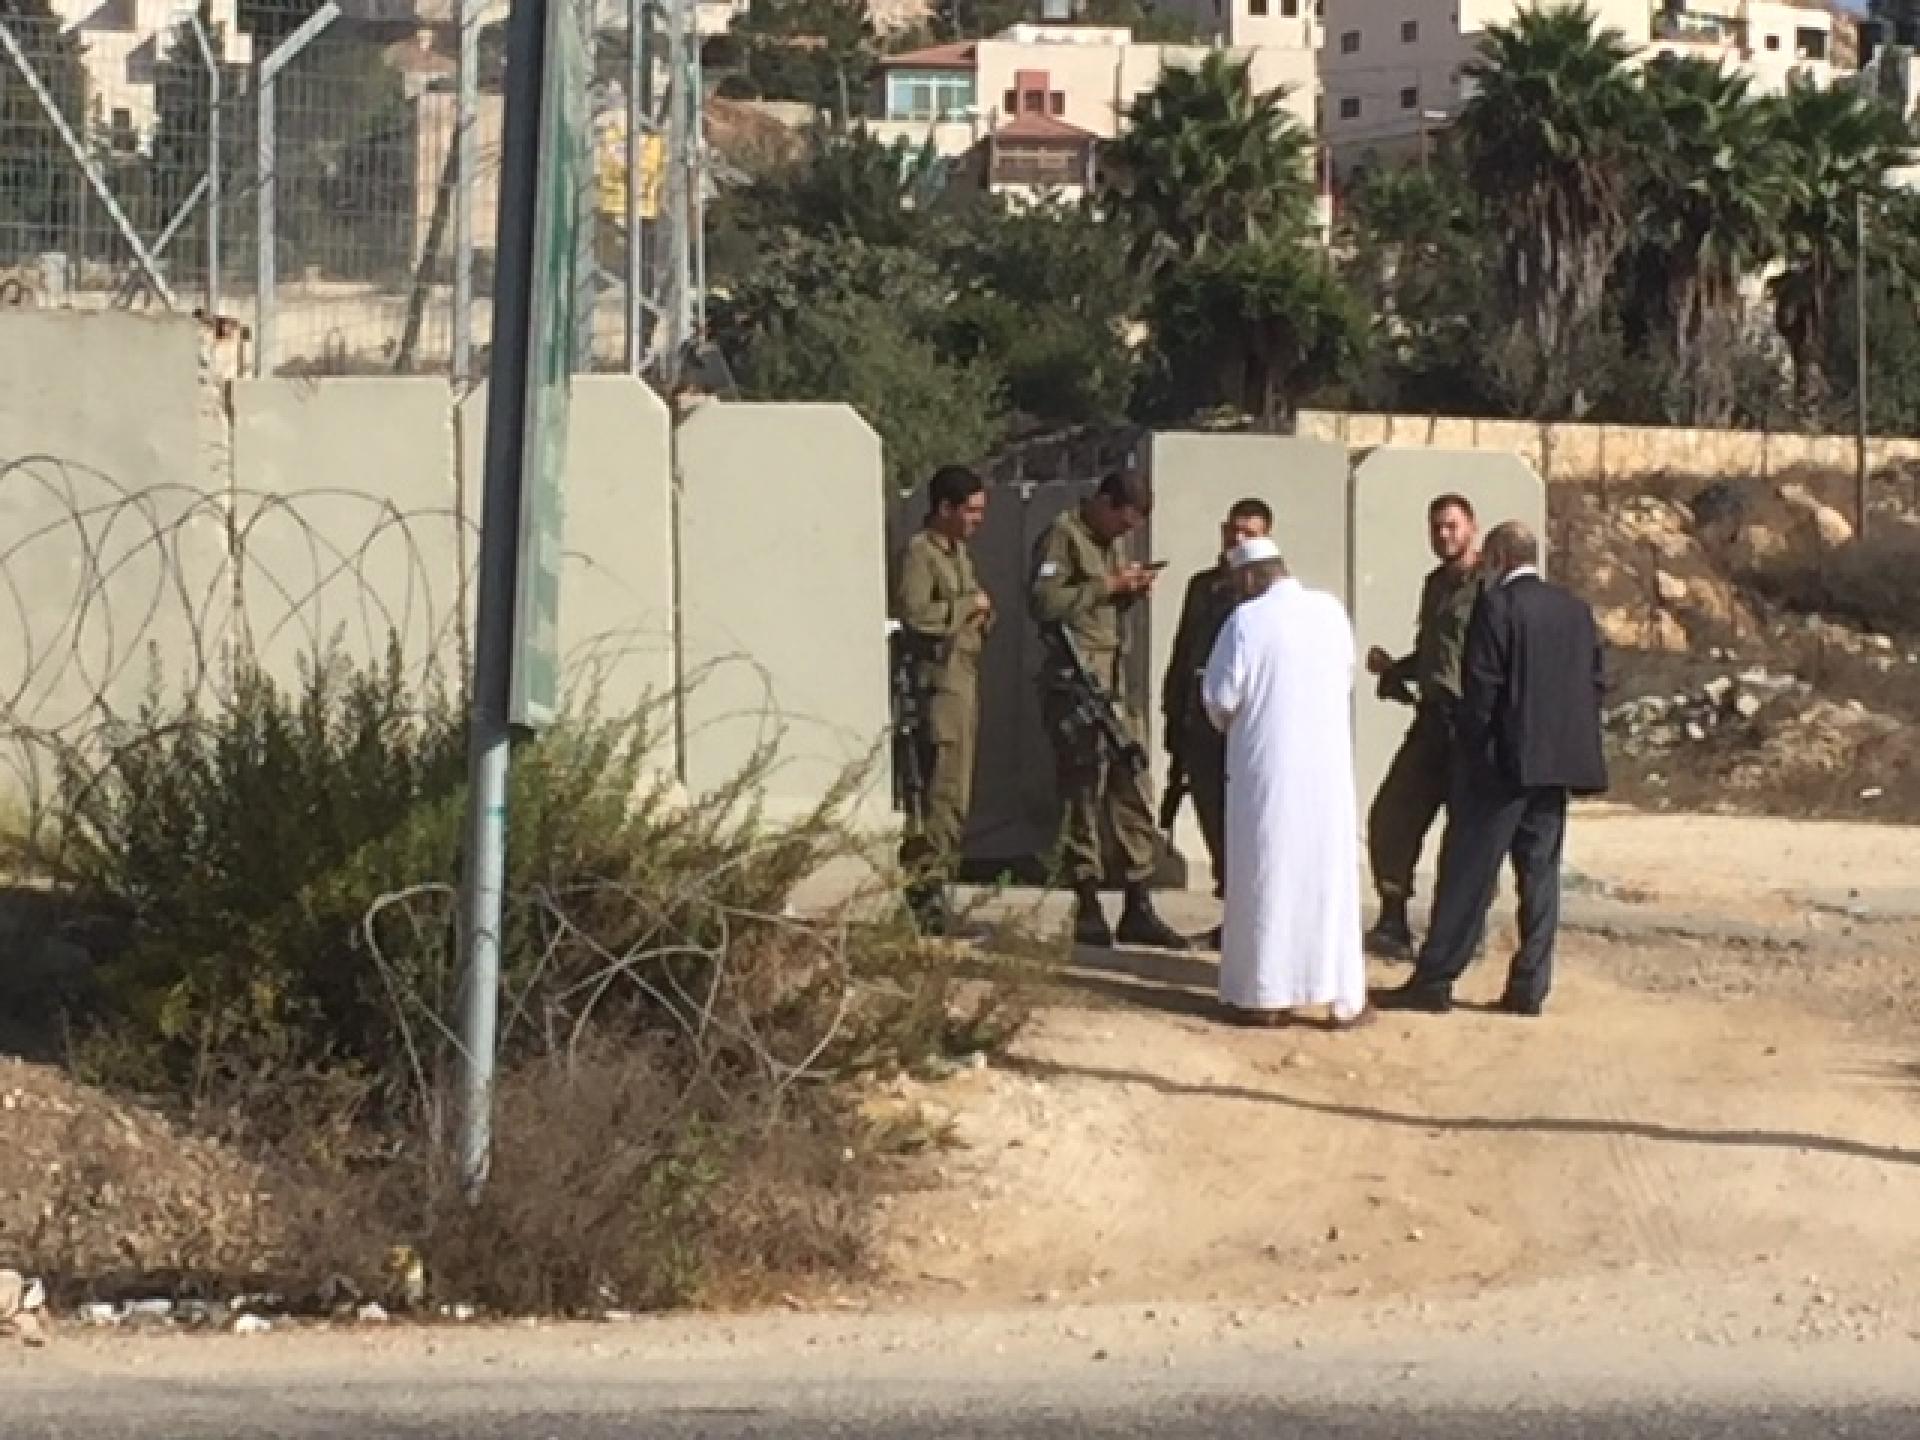 פלסטינים נשואי פנים באו לפילבוקס שבצומת לחפש את תעודת הזהות של הבן